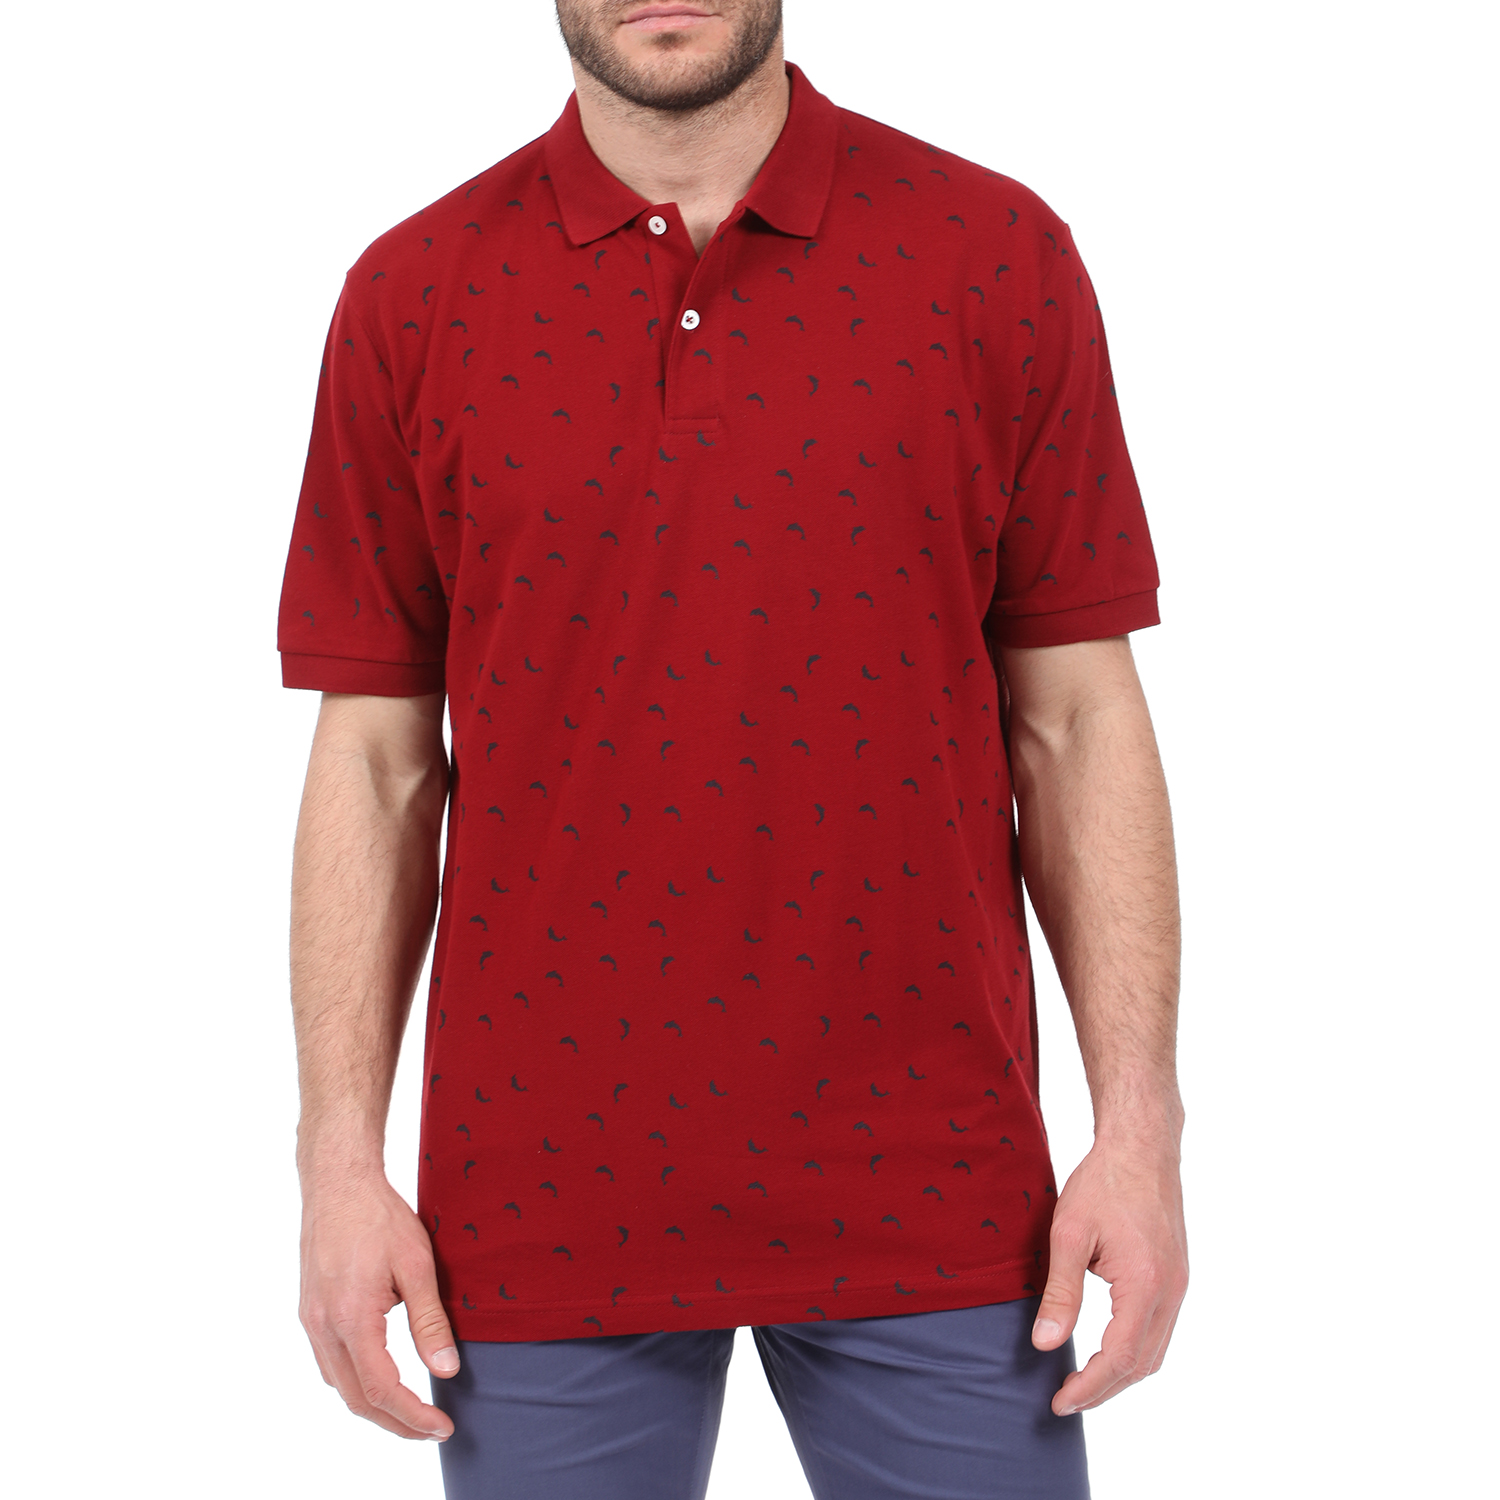 Ανδρικά/Ρούχα/Μπλούζες/Πόλο DORS - Ανδρική polo μπλούζα DORS κόκκινη